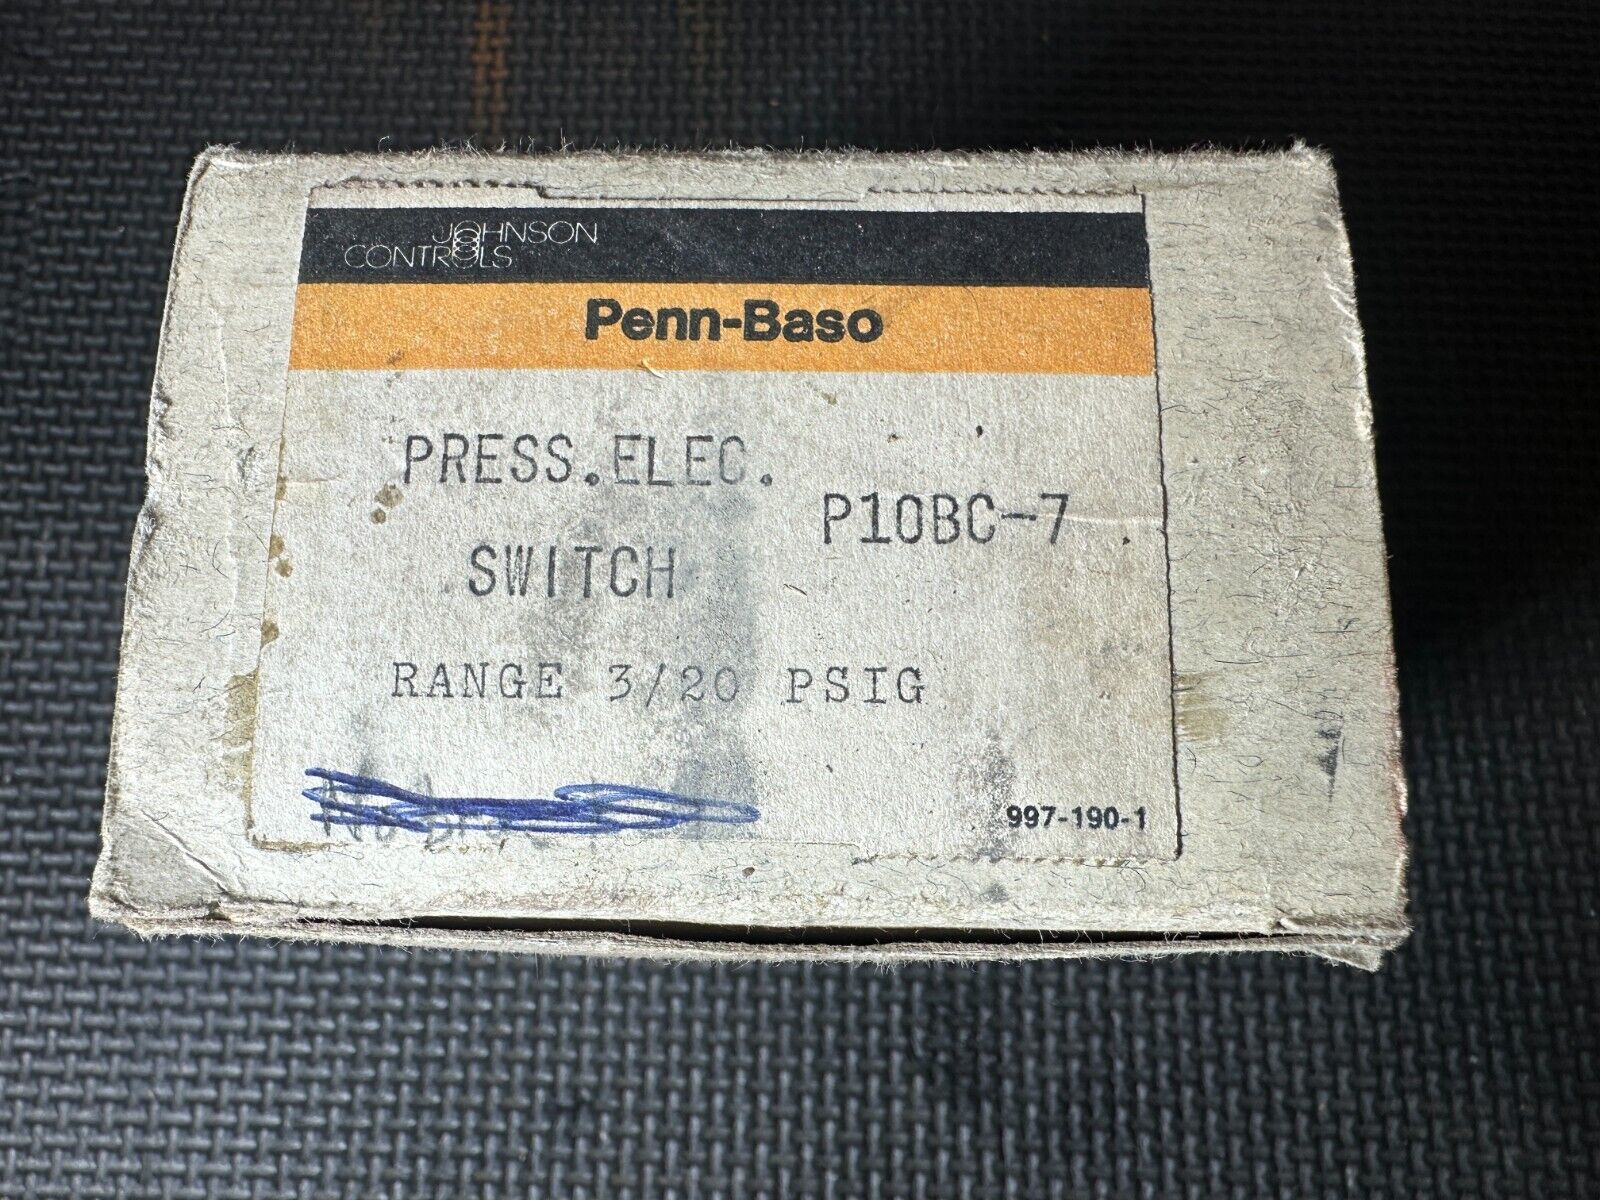 Johnson Controls Penn-Baso Press Elec. Switch P10BC-7 Range 3/20 PSIG